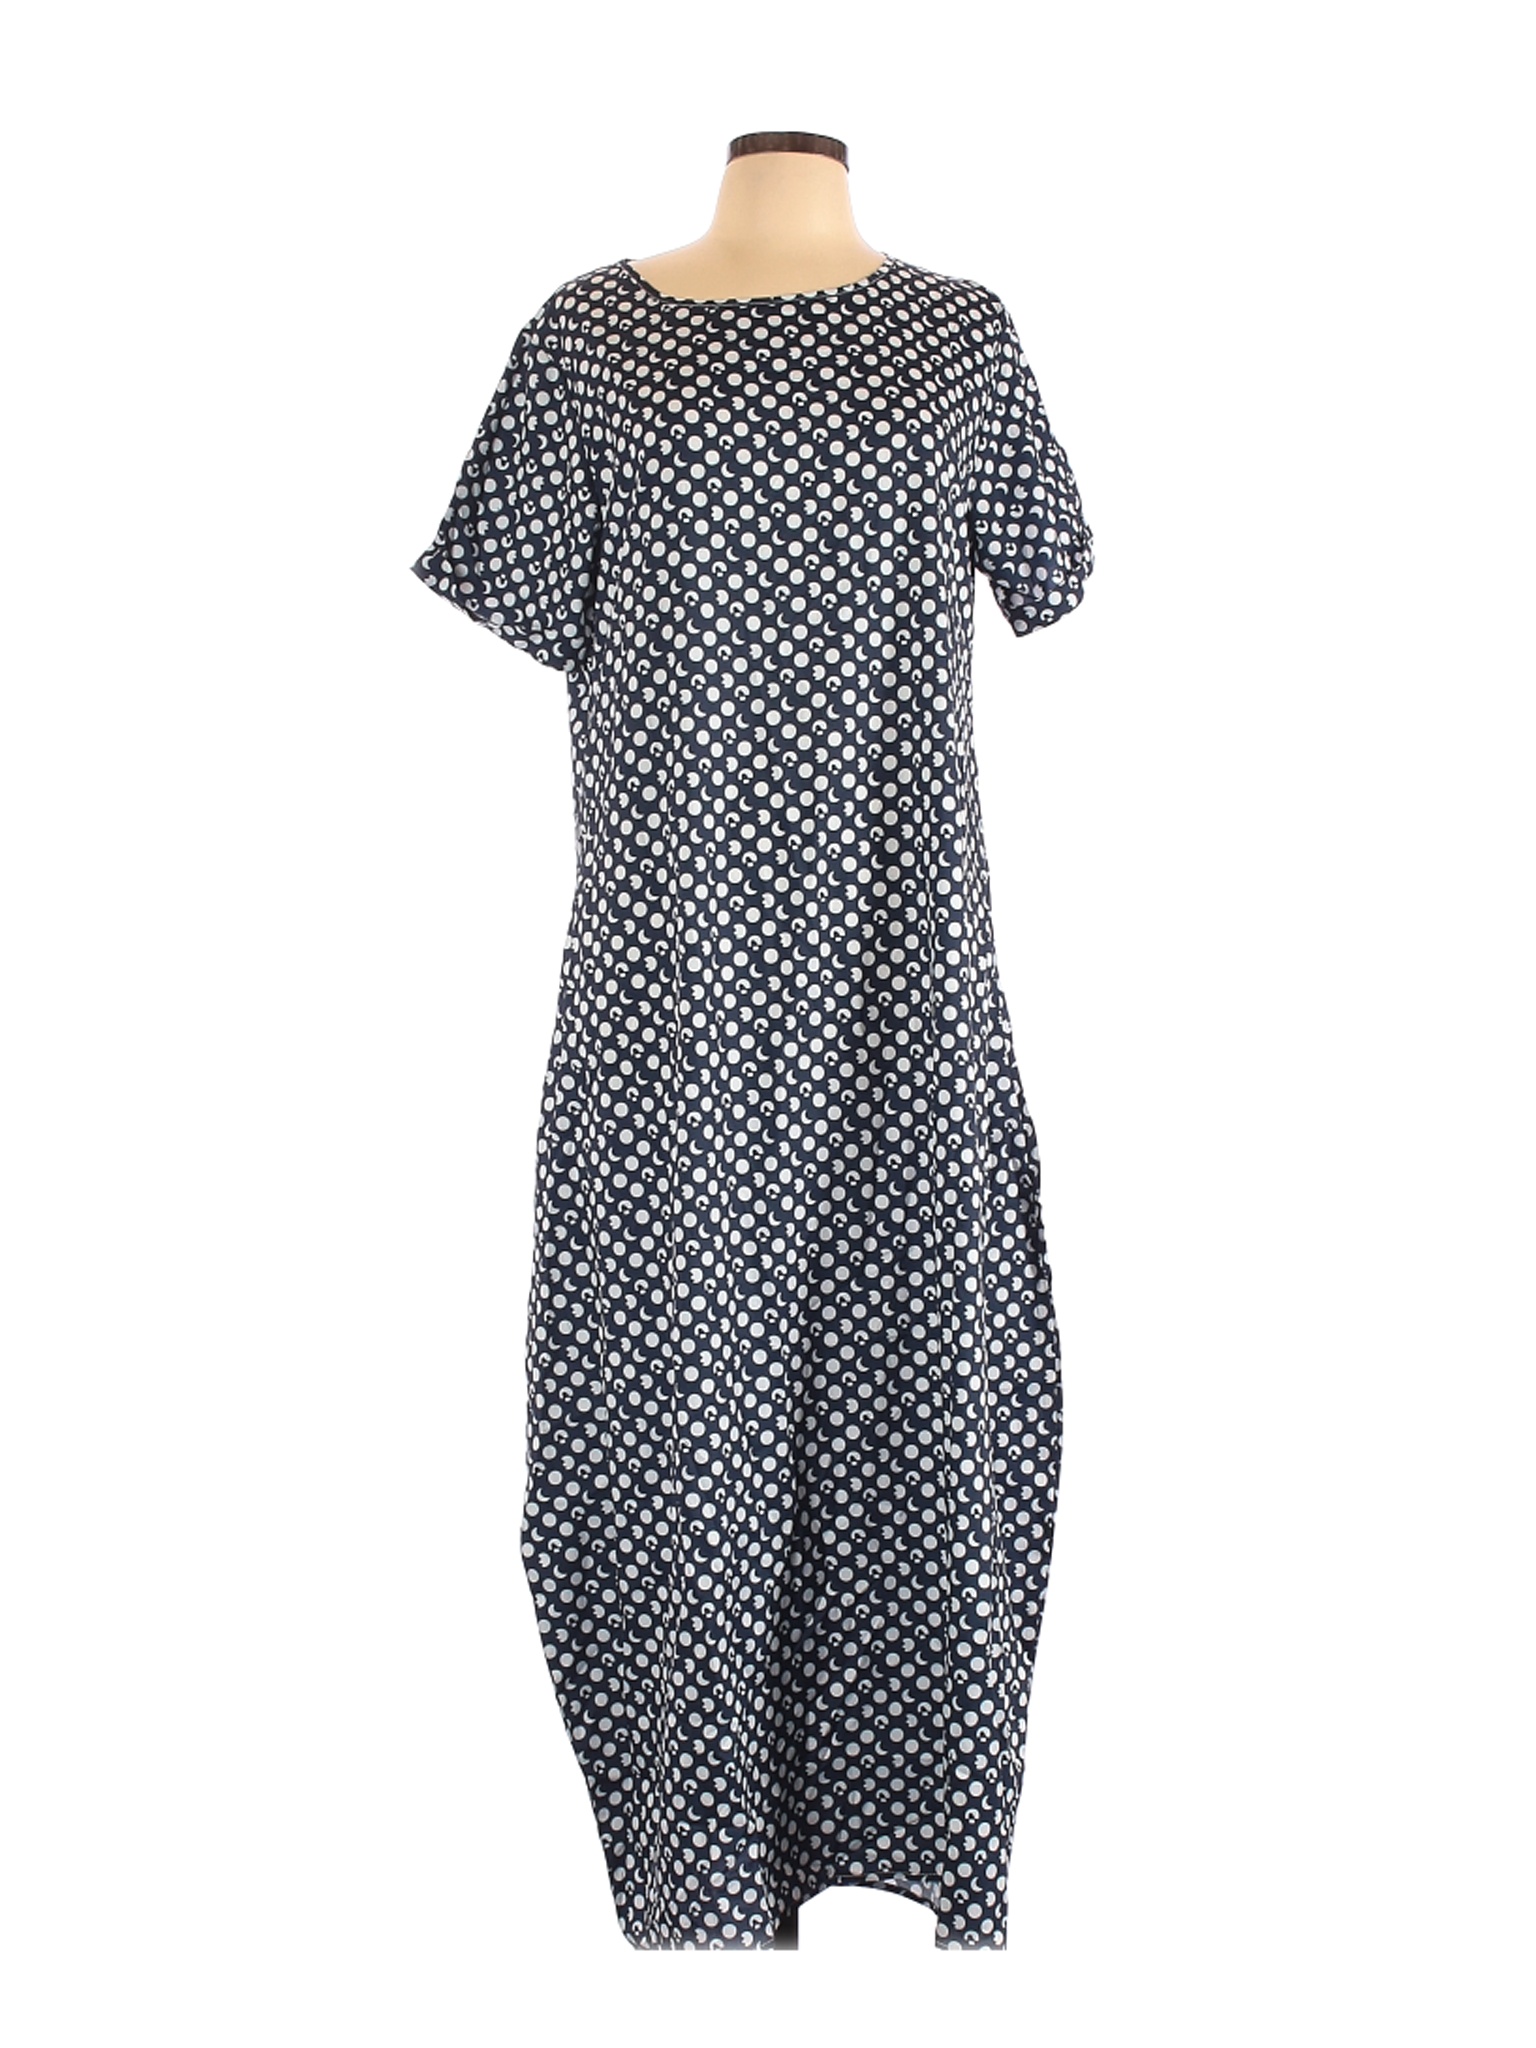 Misslook Women Blue Casual Dress L | eBay